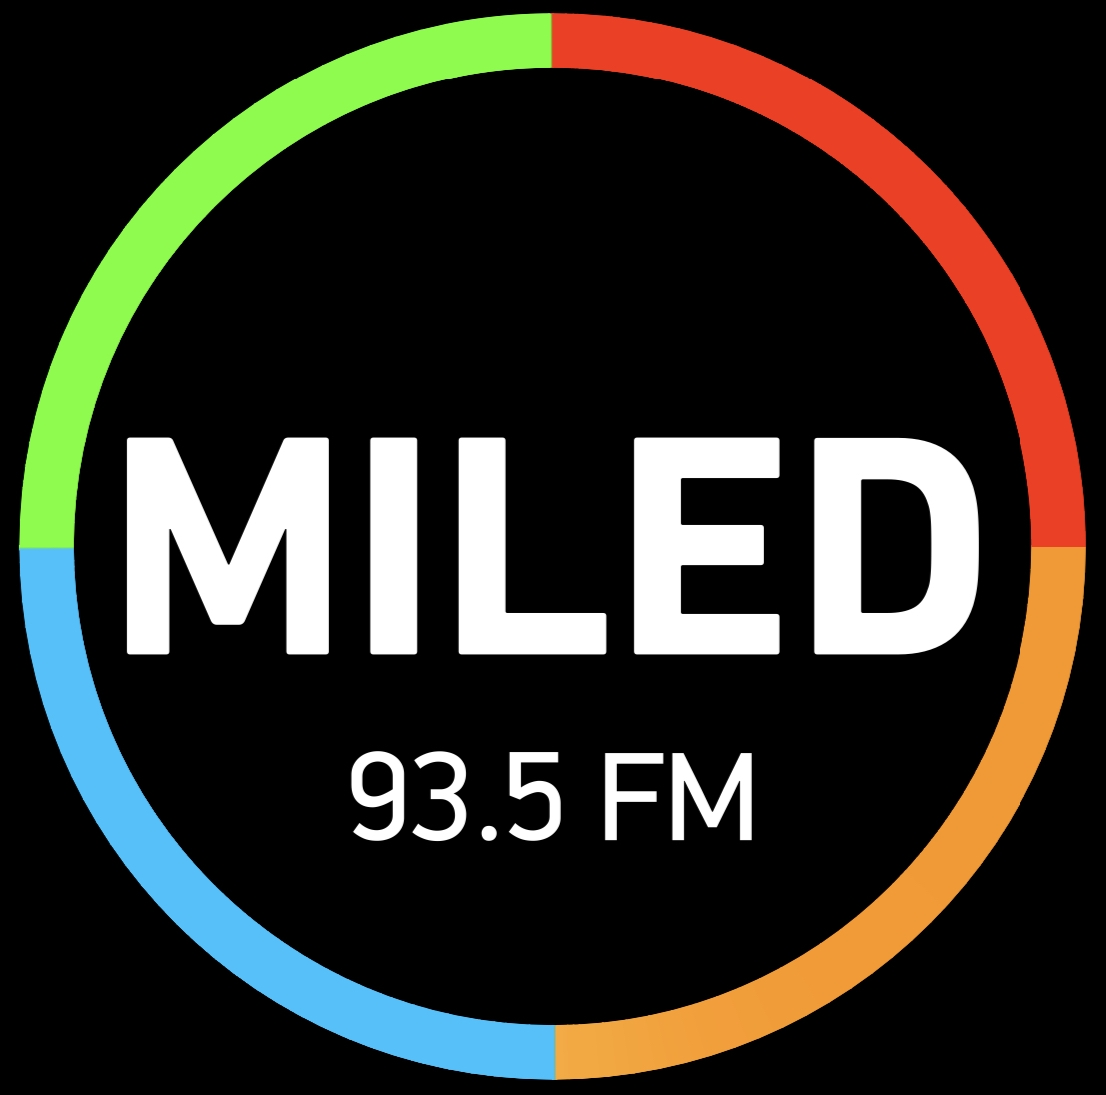 Radio Miled